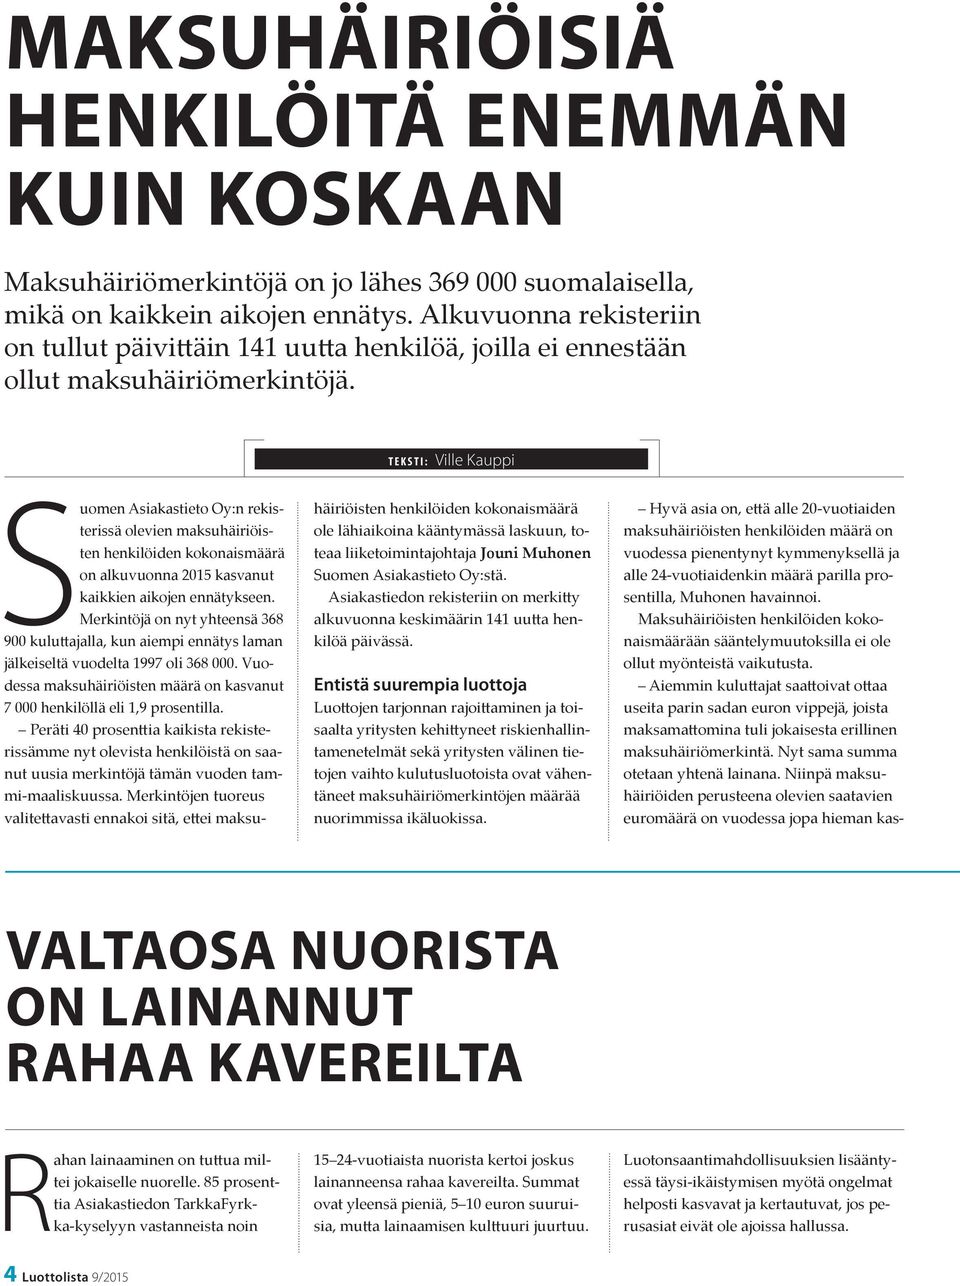 TEKSTI: Ville Kauppi Suomen Asiakastieto Oy:n rekisterissä olevien maksuhäiriöisten henkilöiden kokonaismäärä on alkuvuonna 2015 kasvanut kaikkien aikojen ennätykseen.